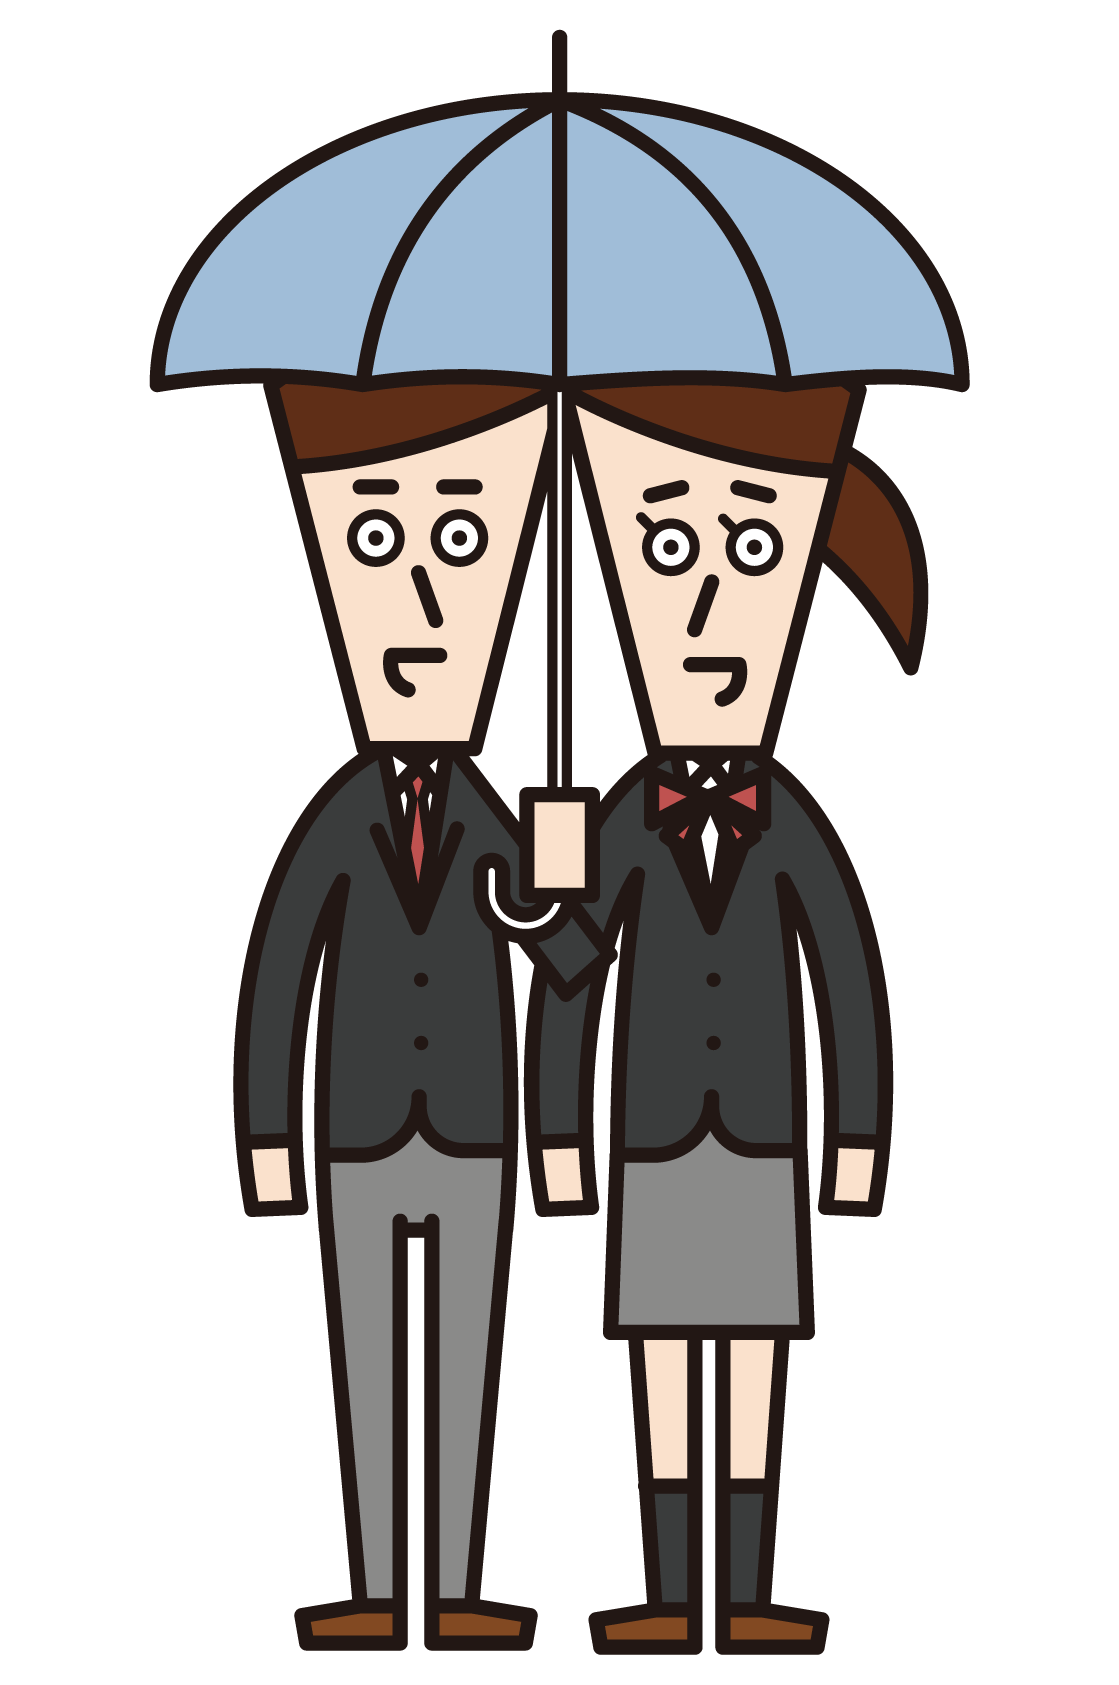 情侶（穿制服的人）的插圖，使組合傘